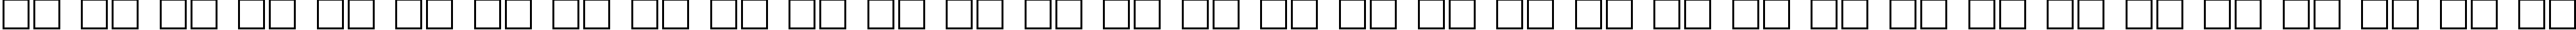 Пример написания русского алфавита шрифтом ProunX